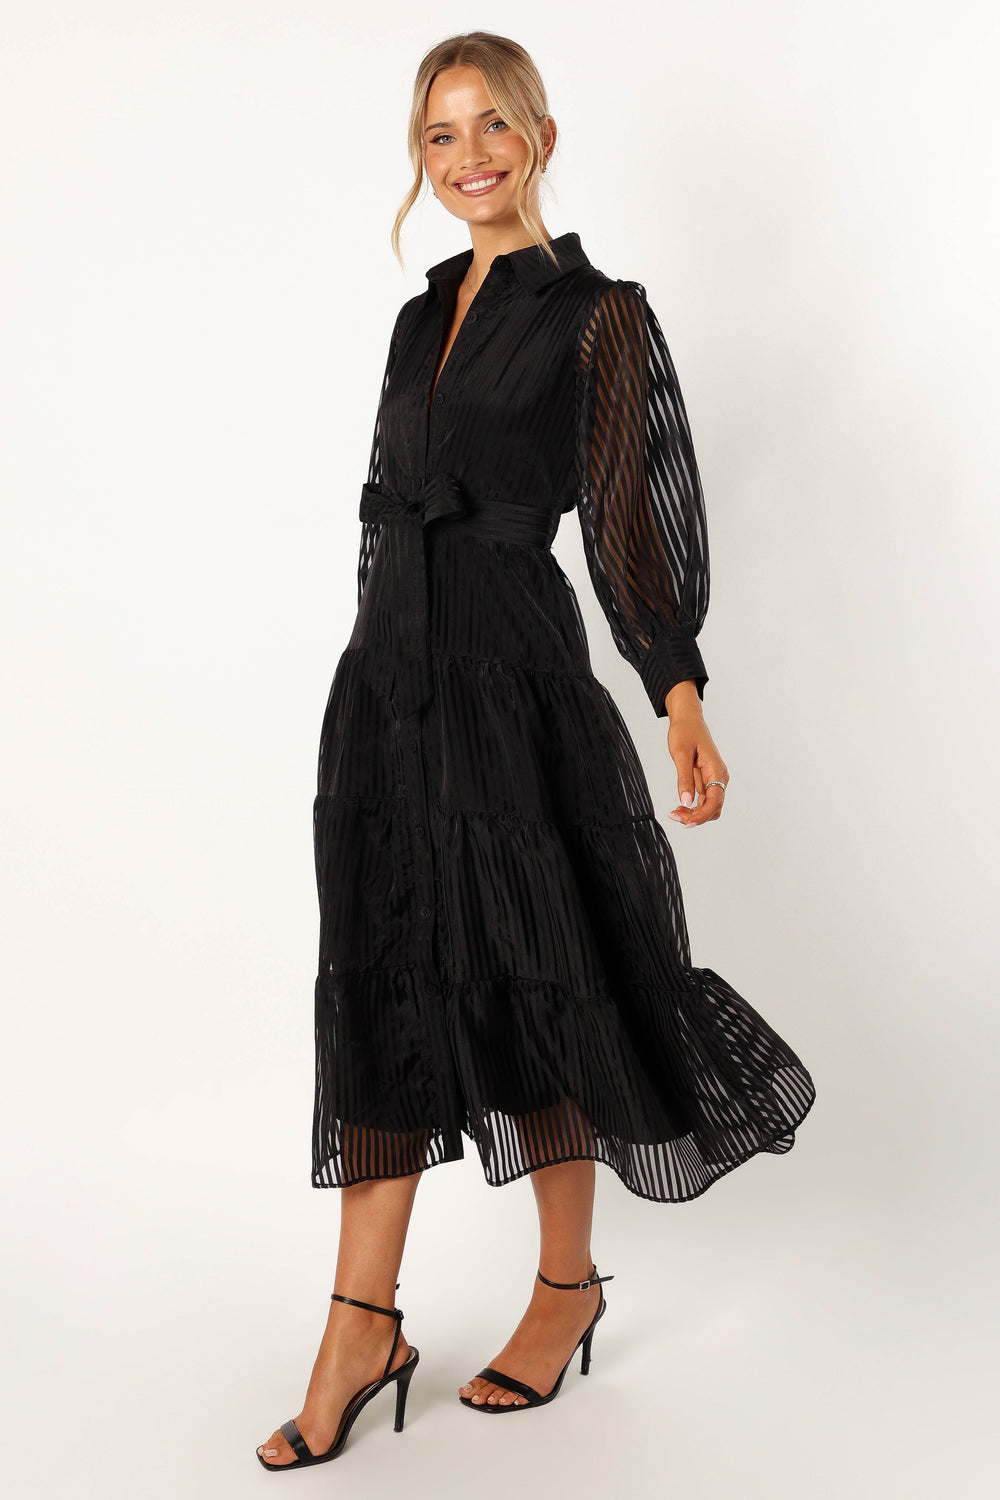 Pup Black - Sleeve Dress Neve USA Long - Petal & Maxi